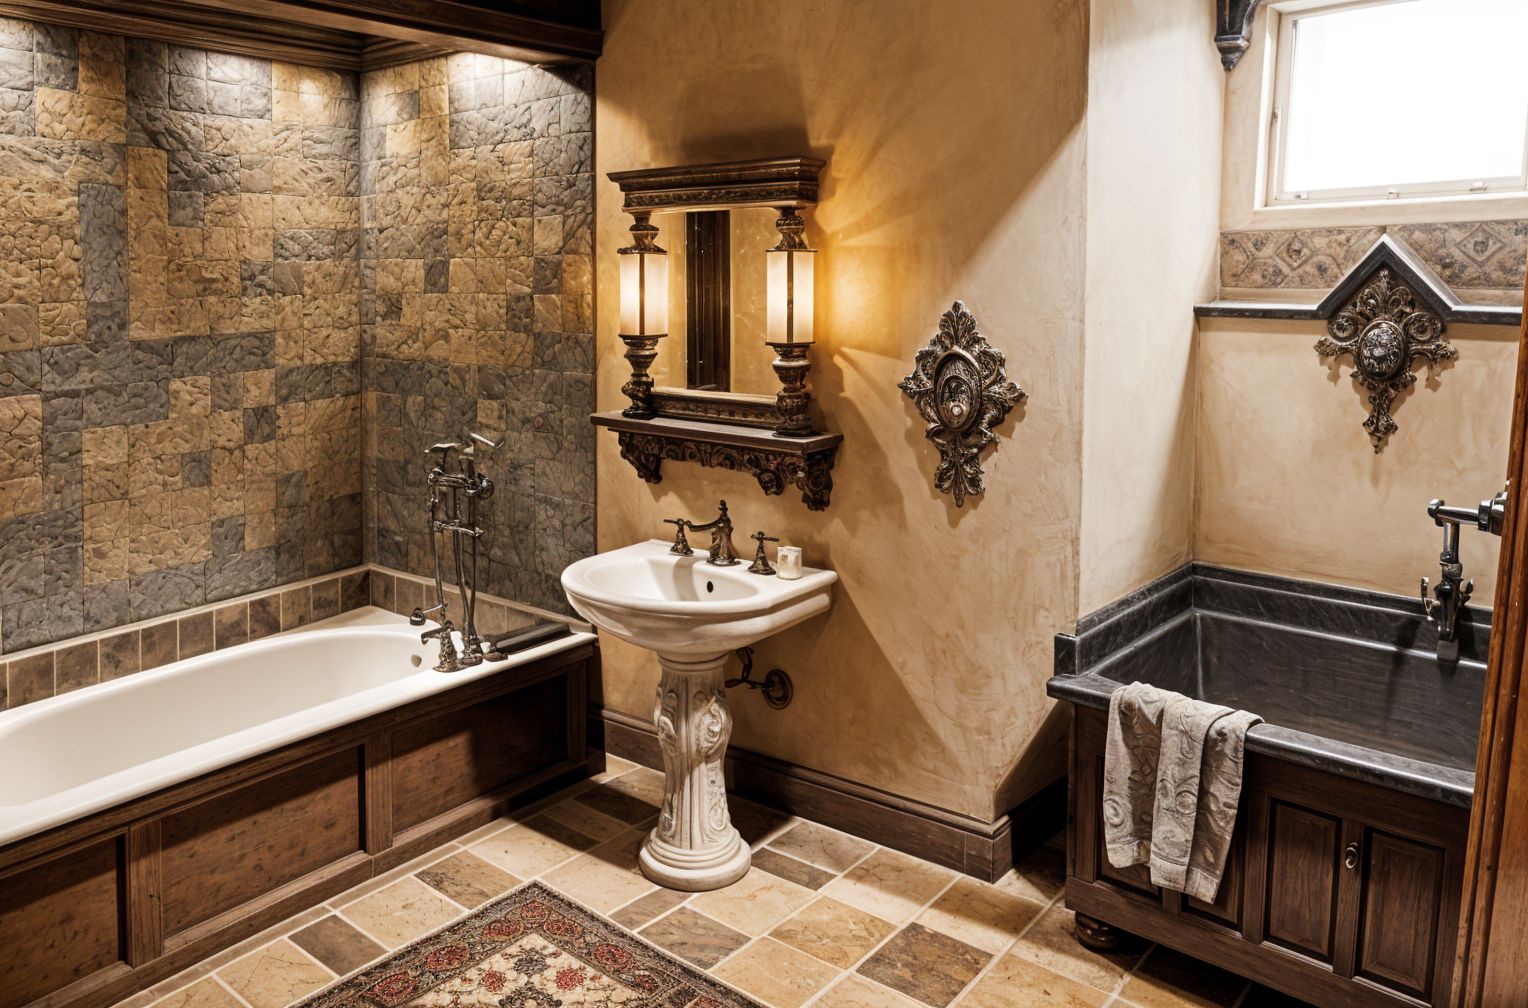 Gothic Hotel Bathroom